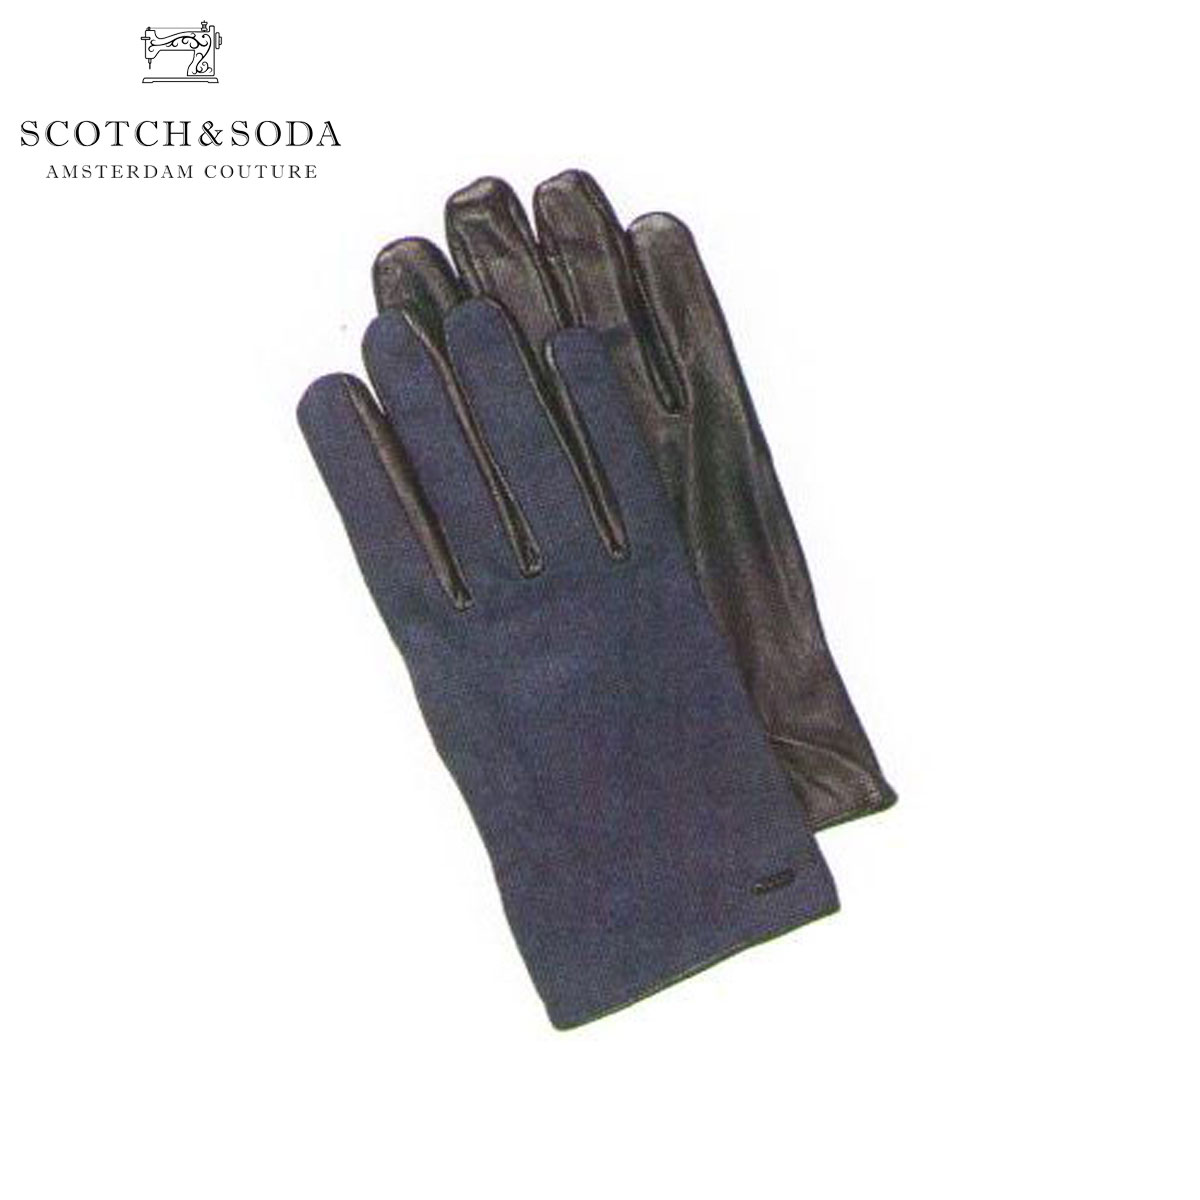 年最新海外 スコッチアンドソーダ 手袋 メンズ Scotch Soda グローブ Woolen Gloves With Leather Details 人気ショップが最安値挑戦 Sc2cafa4910 Universe Wf